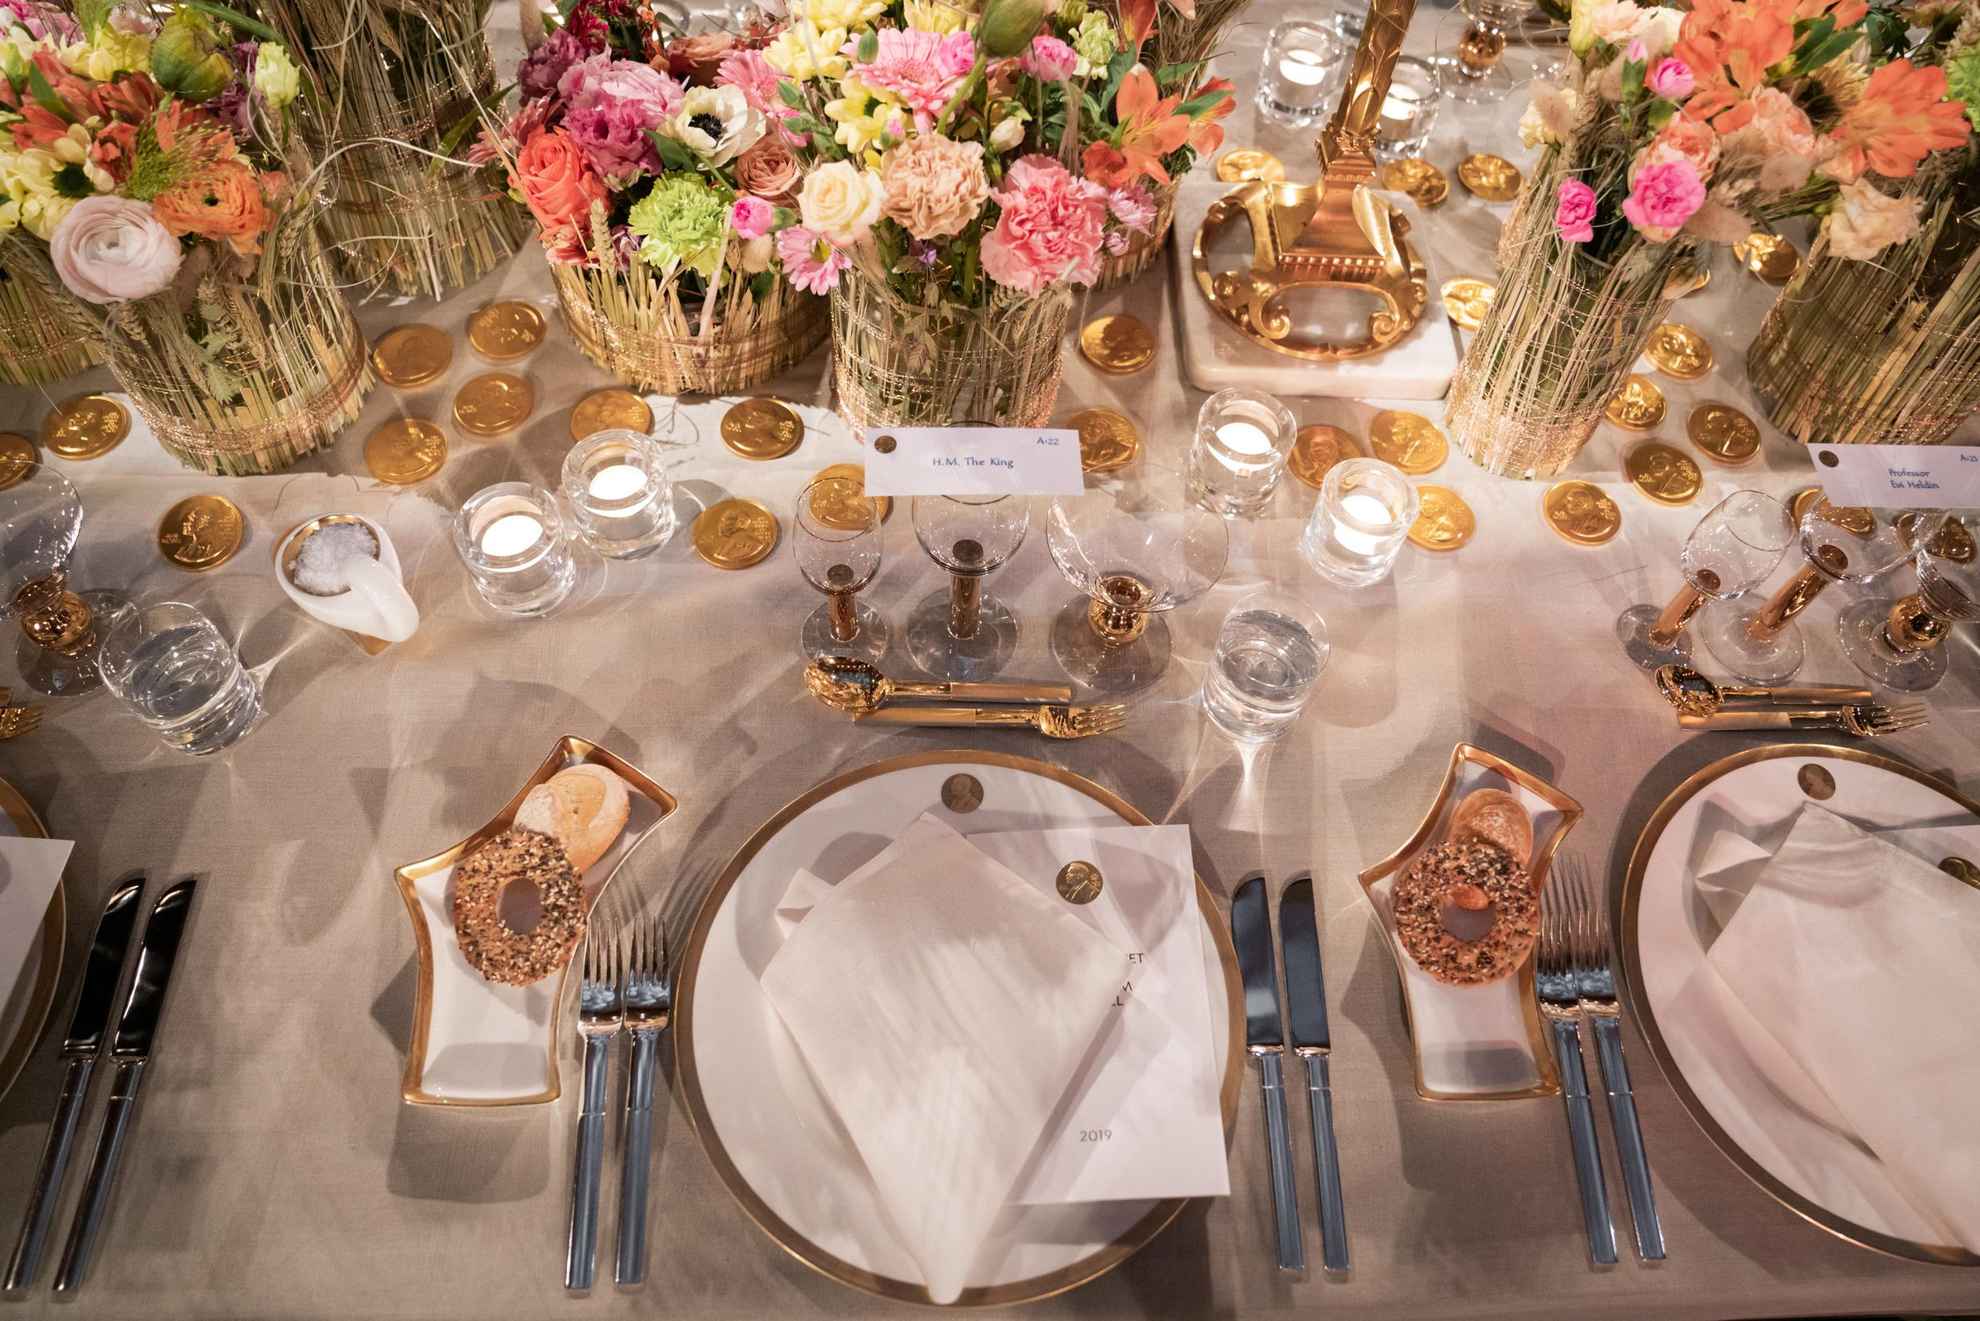 Une vaisselle blanche avec des détails dorés est posée sur une table avec une nappe blanche. Au milieu de la table se trouvent des fleurs colorées dans des vases.